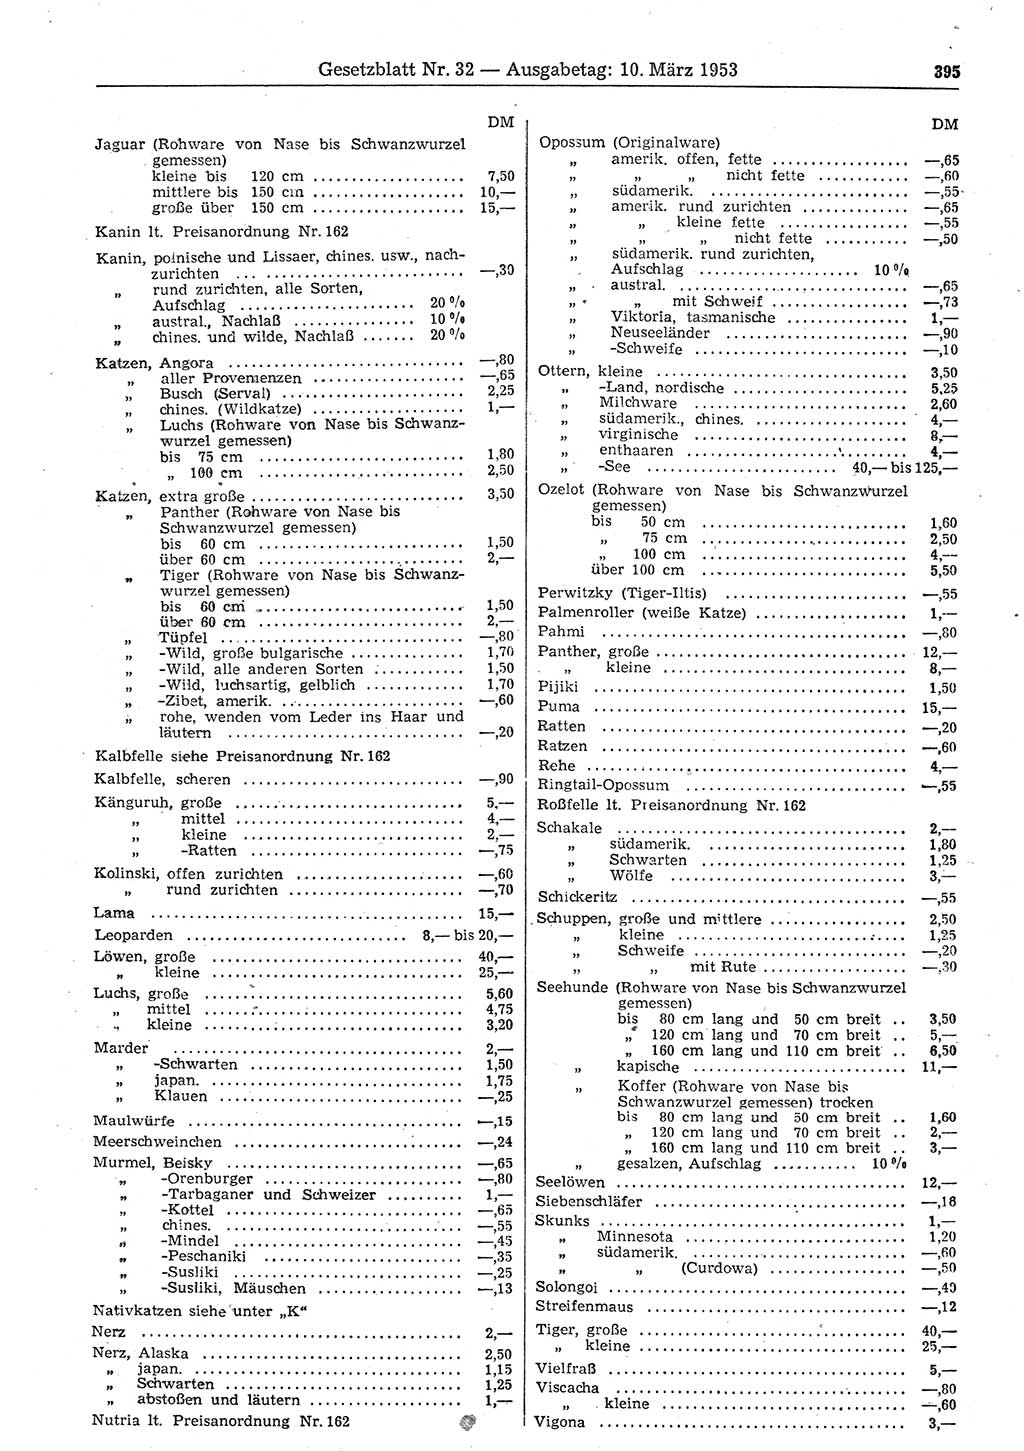 Gesetzblatt (GBl.) der Deutschen Demokratischen Republik (DDR) 1953, Seite 395 (GBl. DDR 1953, S. 395)